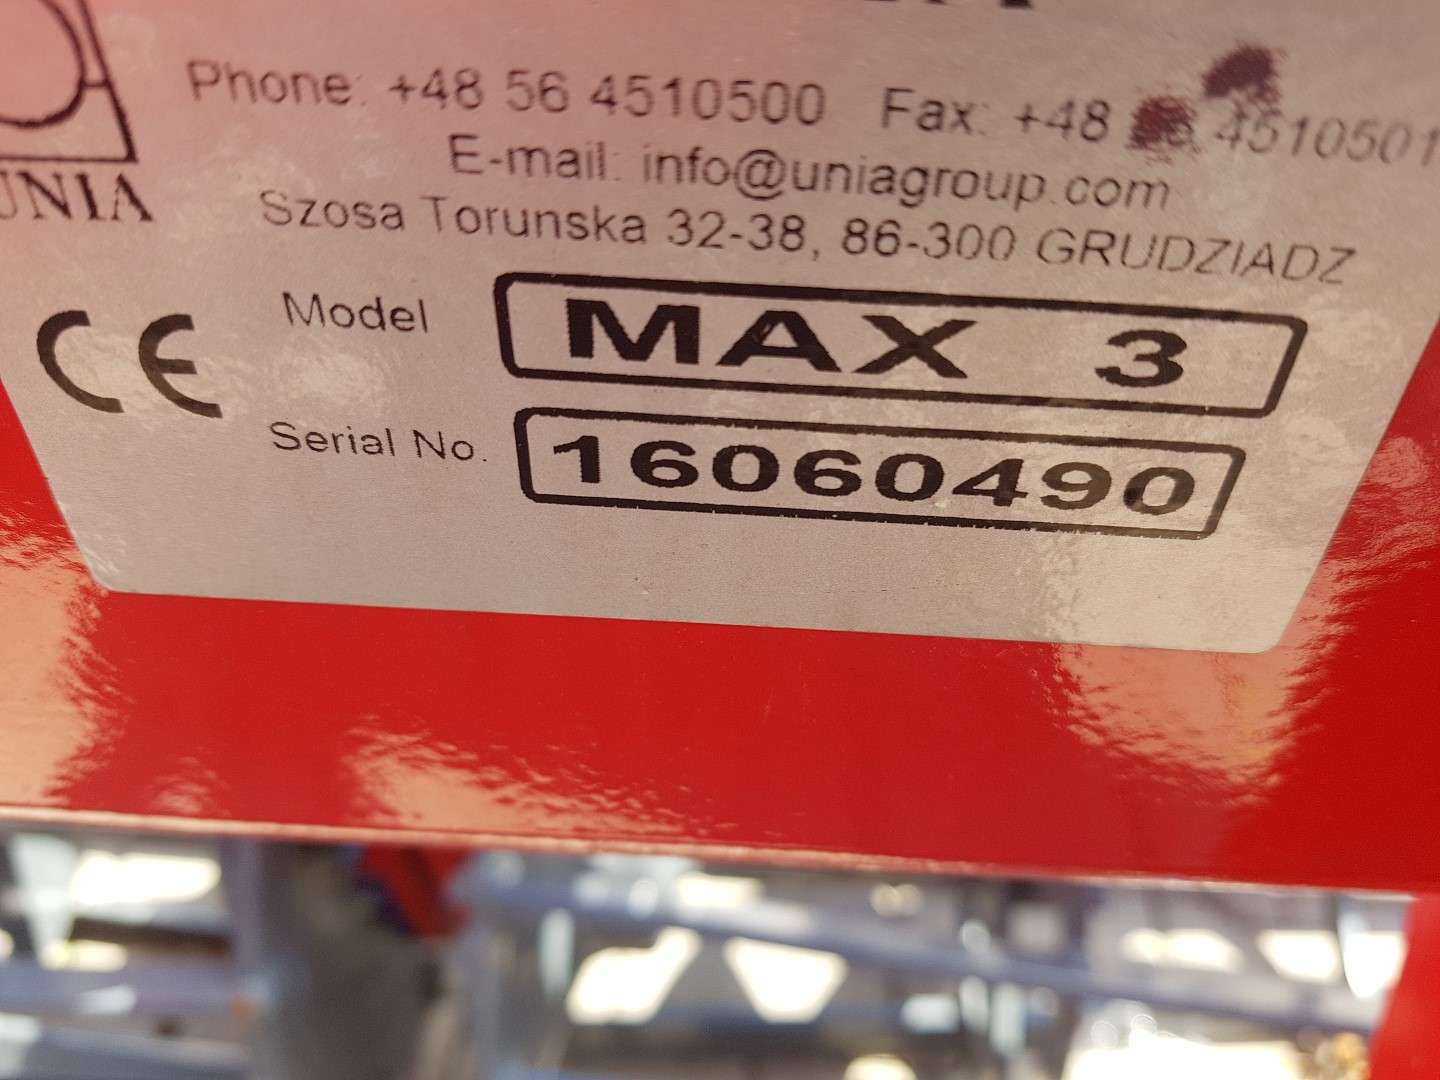 Tabliczka znamionowa agregatu MAX 3 firmy Unia group